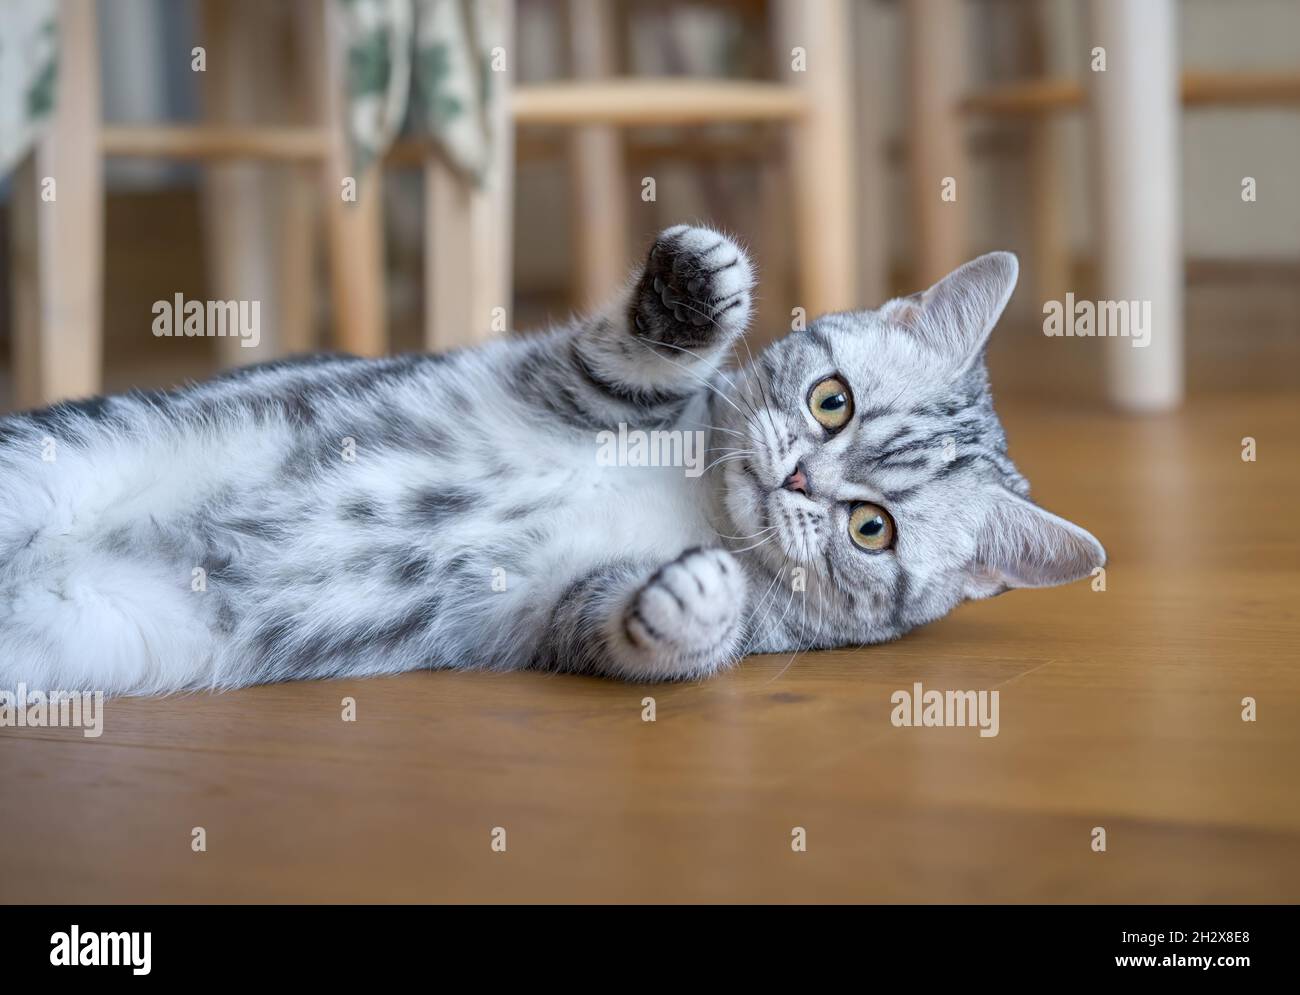 Un joven gato británico Shorthair gatito, negro plata clásico tabby mujer, acostado juguetonamente en un suelo y con apariencia curiosa Foto de stock